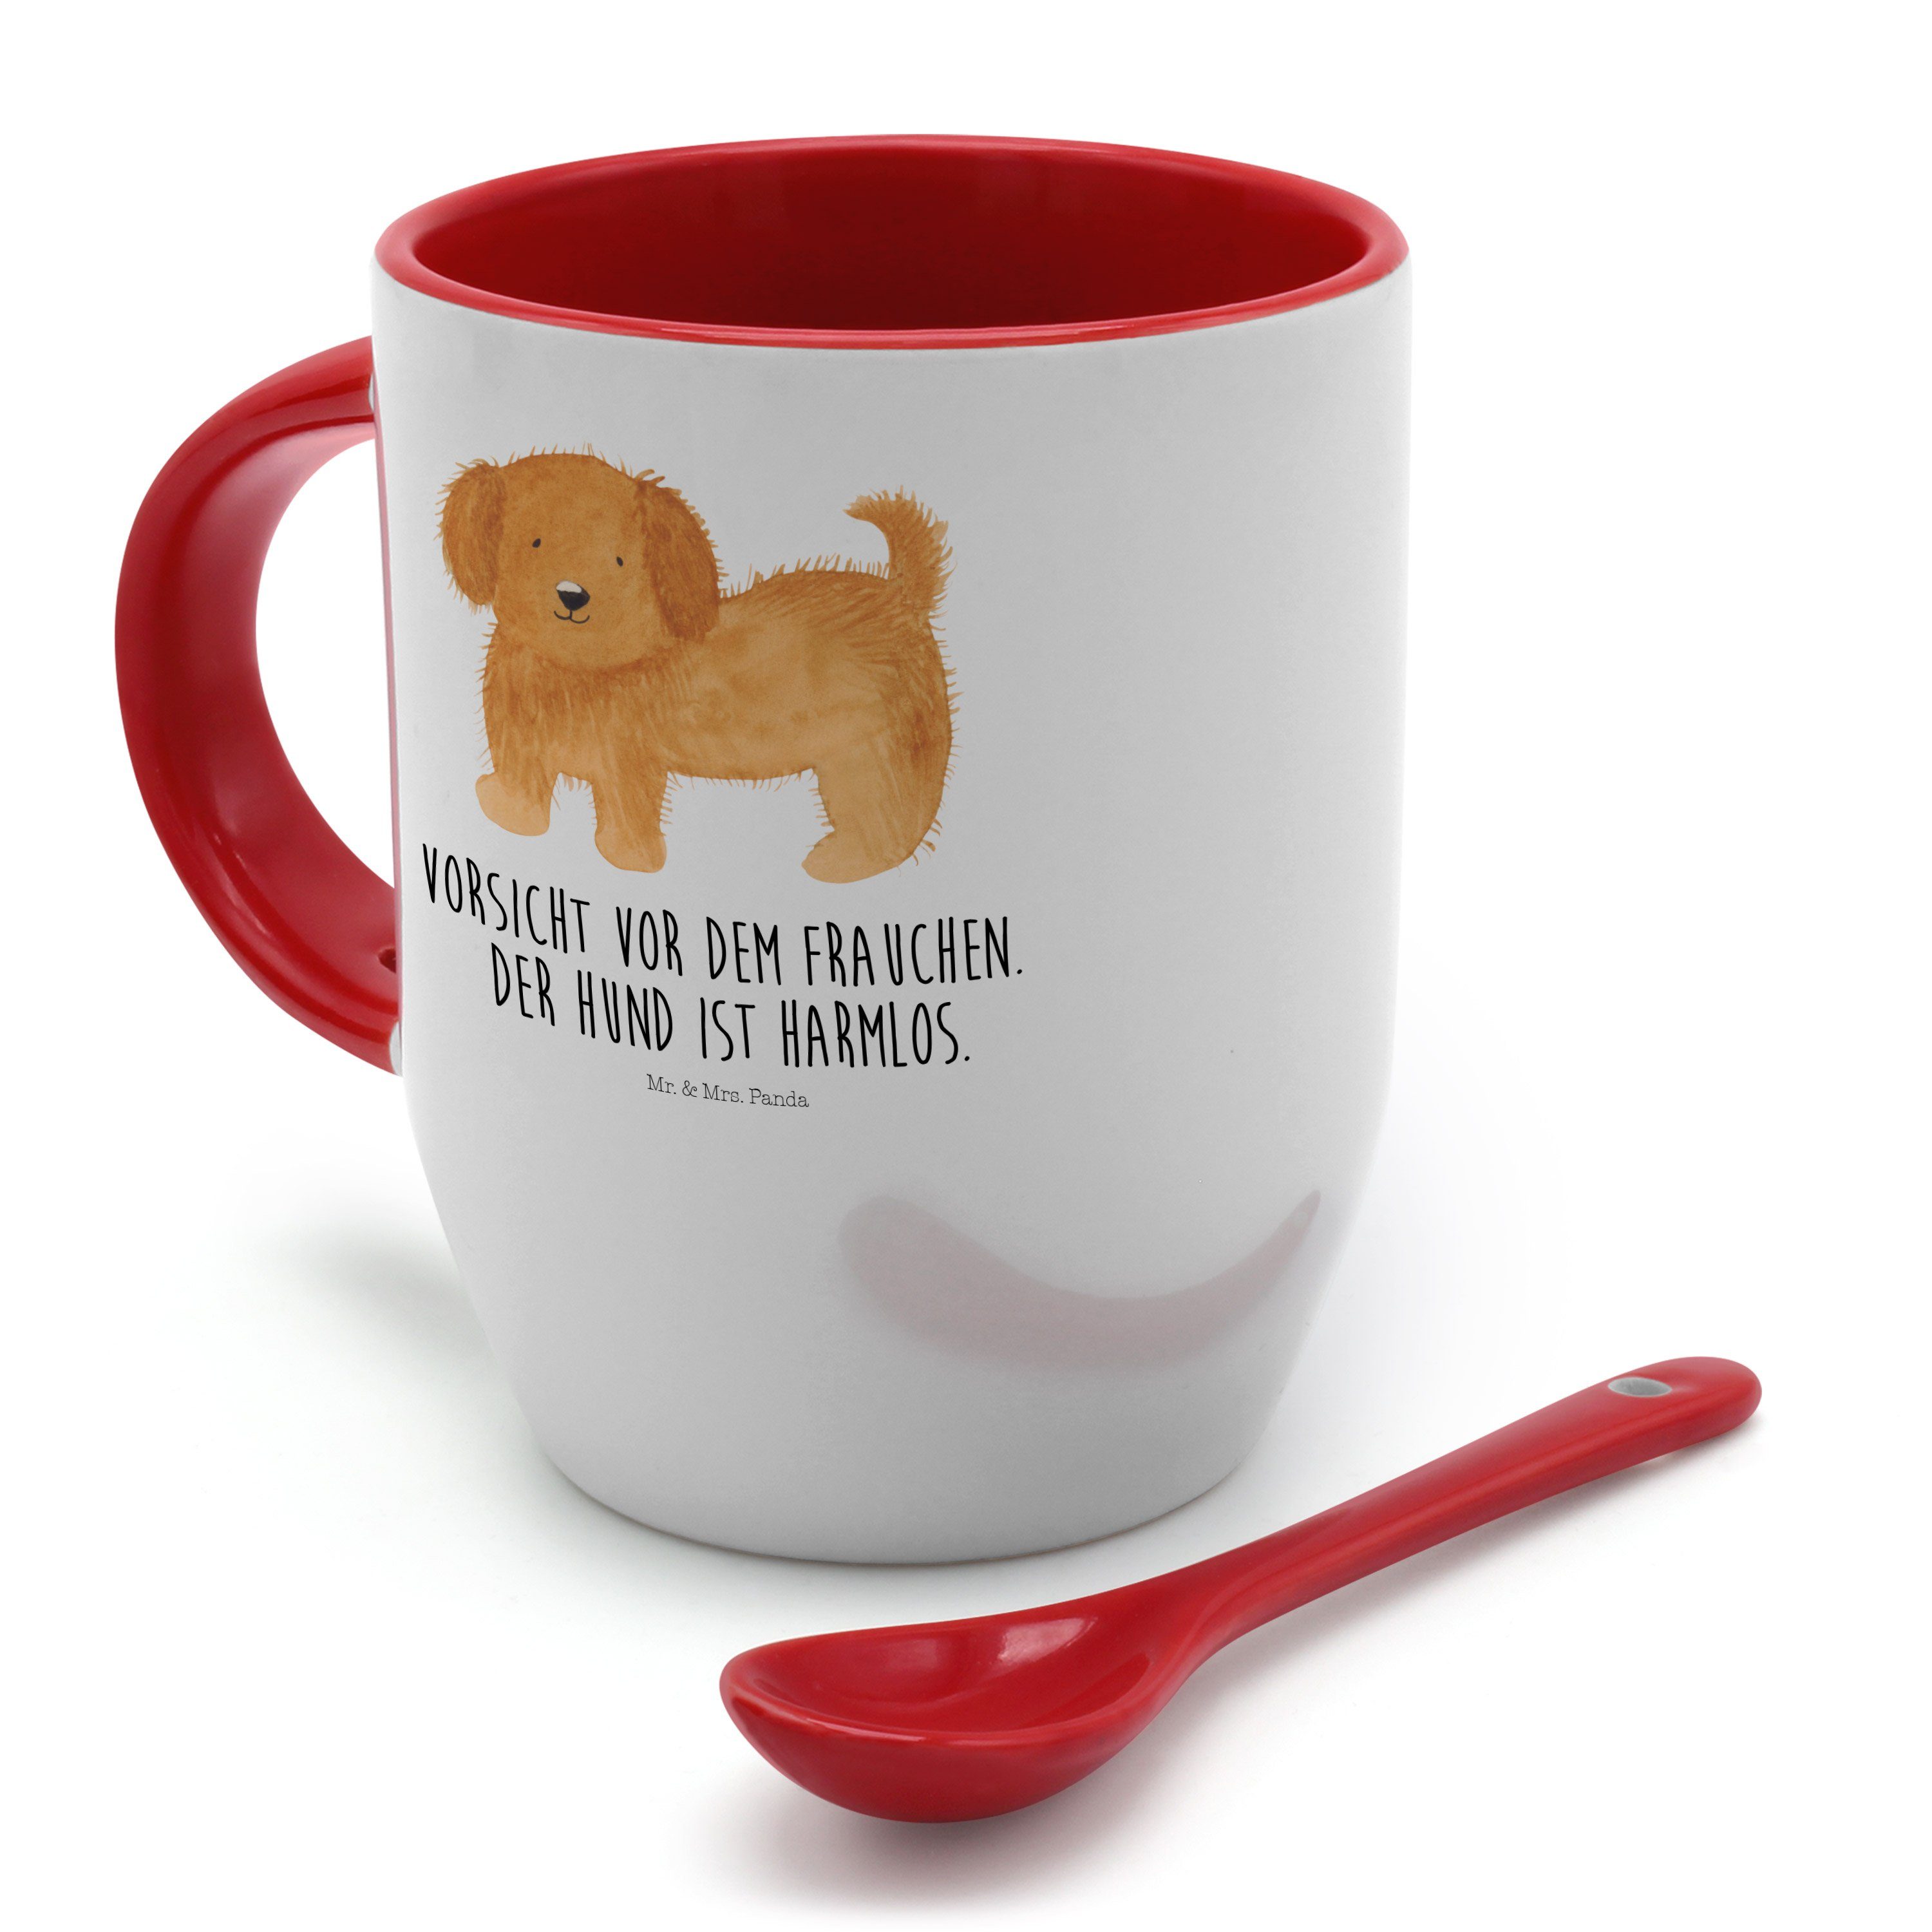 Mr. & Mrs. Panda Tasse Geschenk, - Hundebesitzer, Weiß flauschig - Hund Keramik Frauchen, Vierbeiner